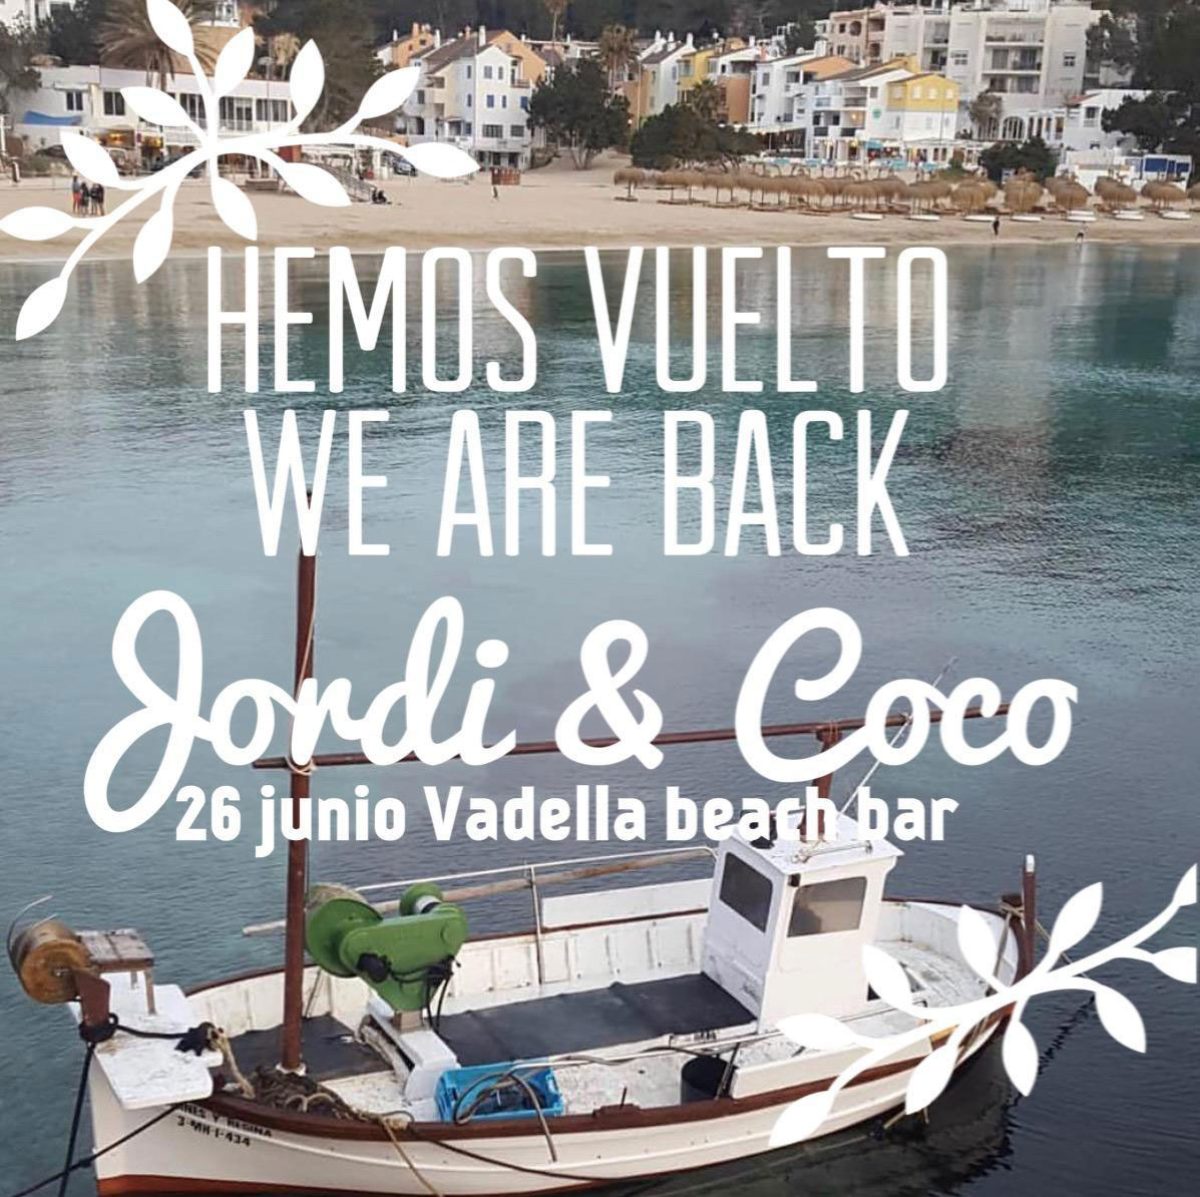 reopening-vadella-beach-bar-ibiza-2020-welcometoibiza